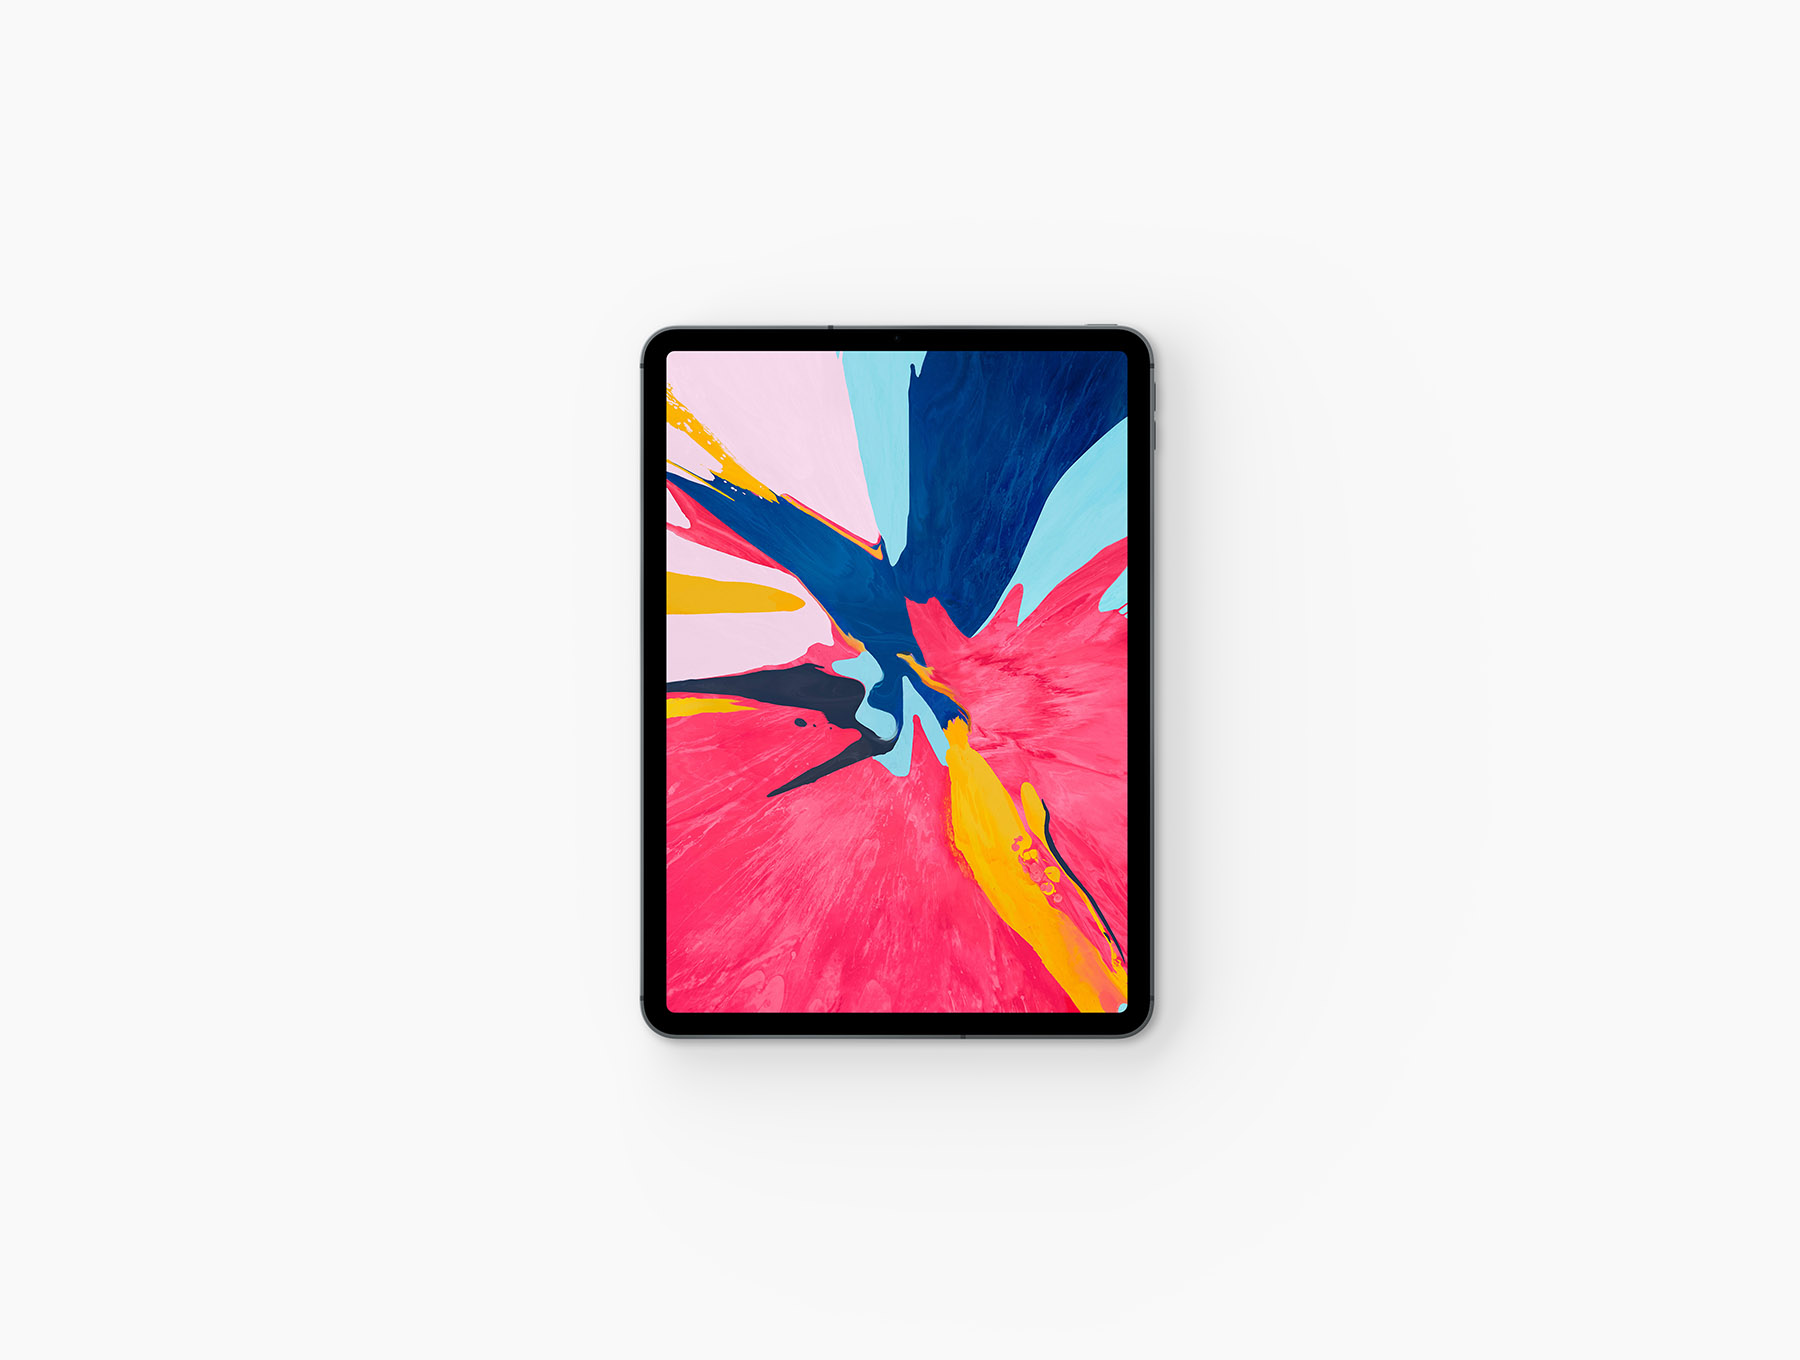 iPad Pro 2018展示样机下载 [PSD]插图(3)